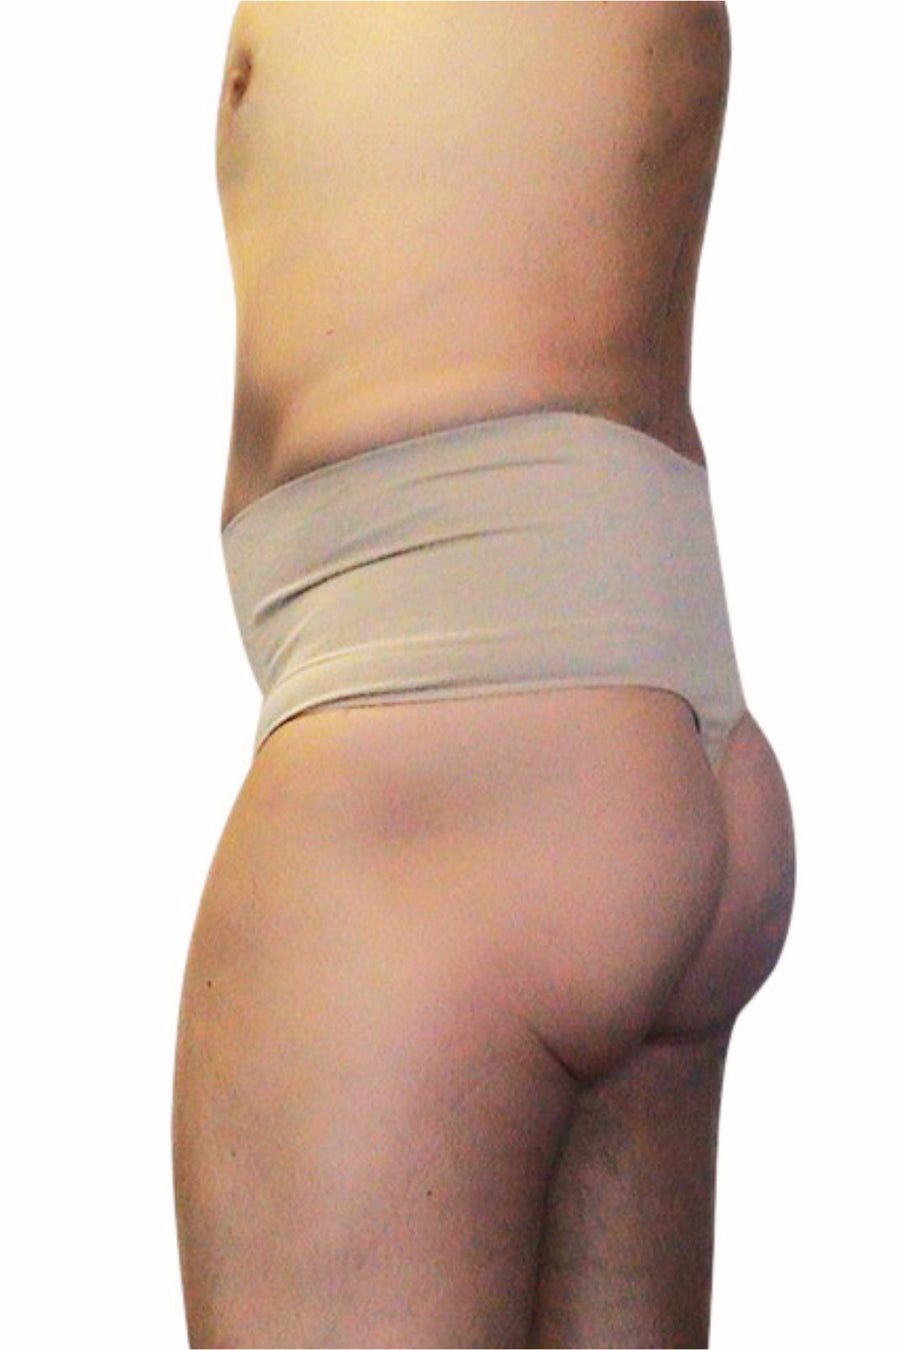 Women Mid-Waist Shapewear Tummy Control Thong Underwear